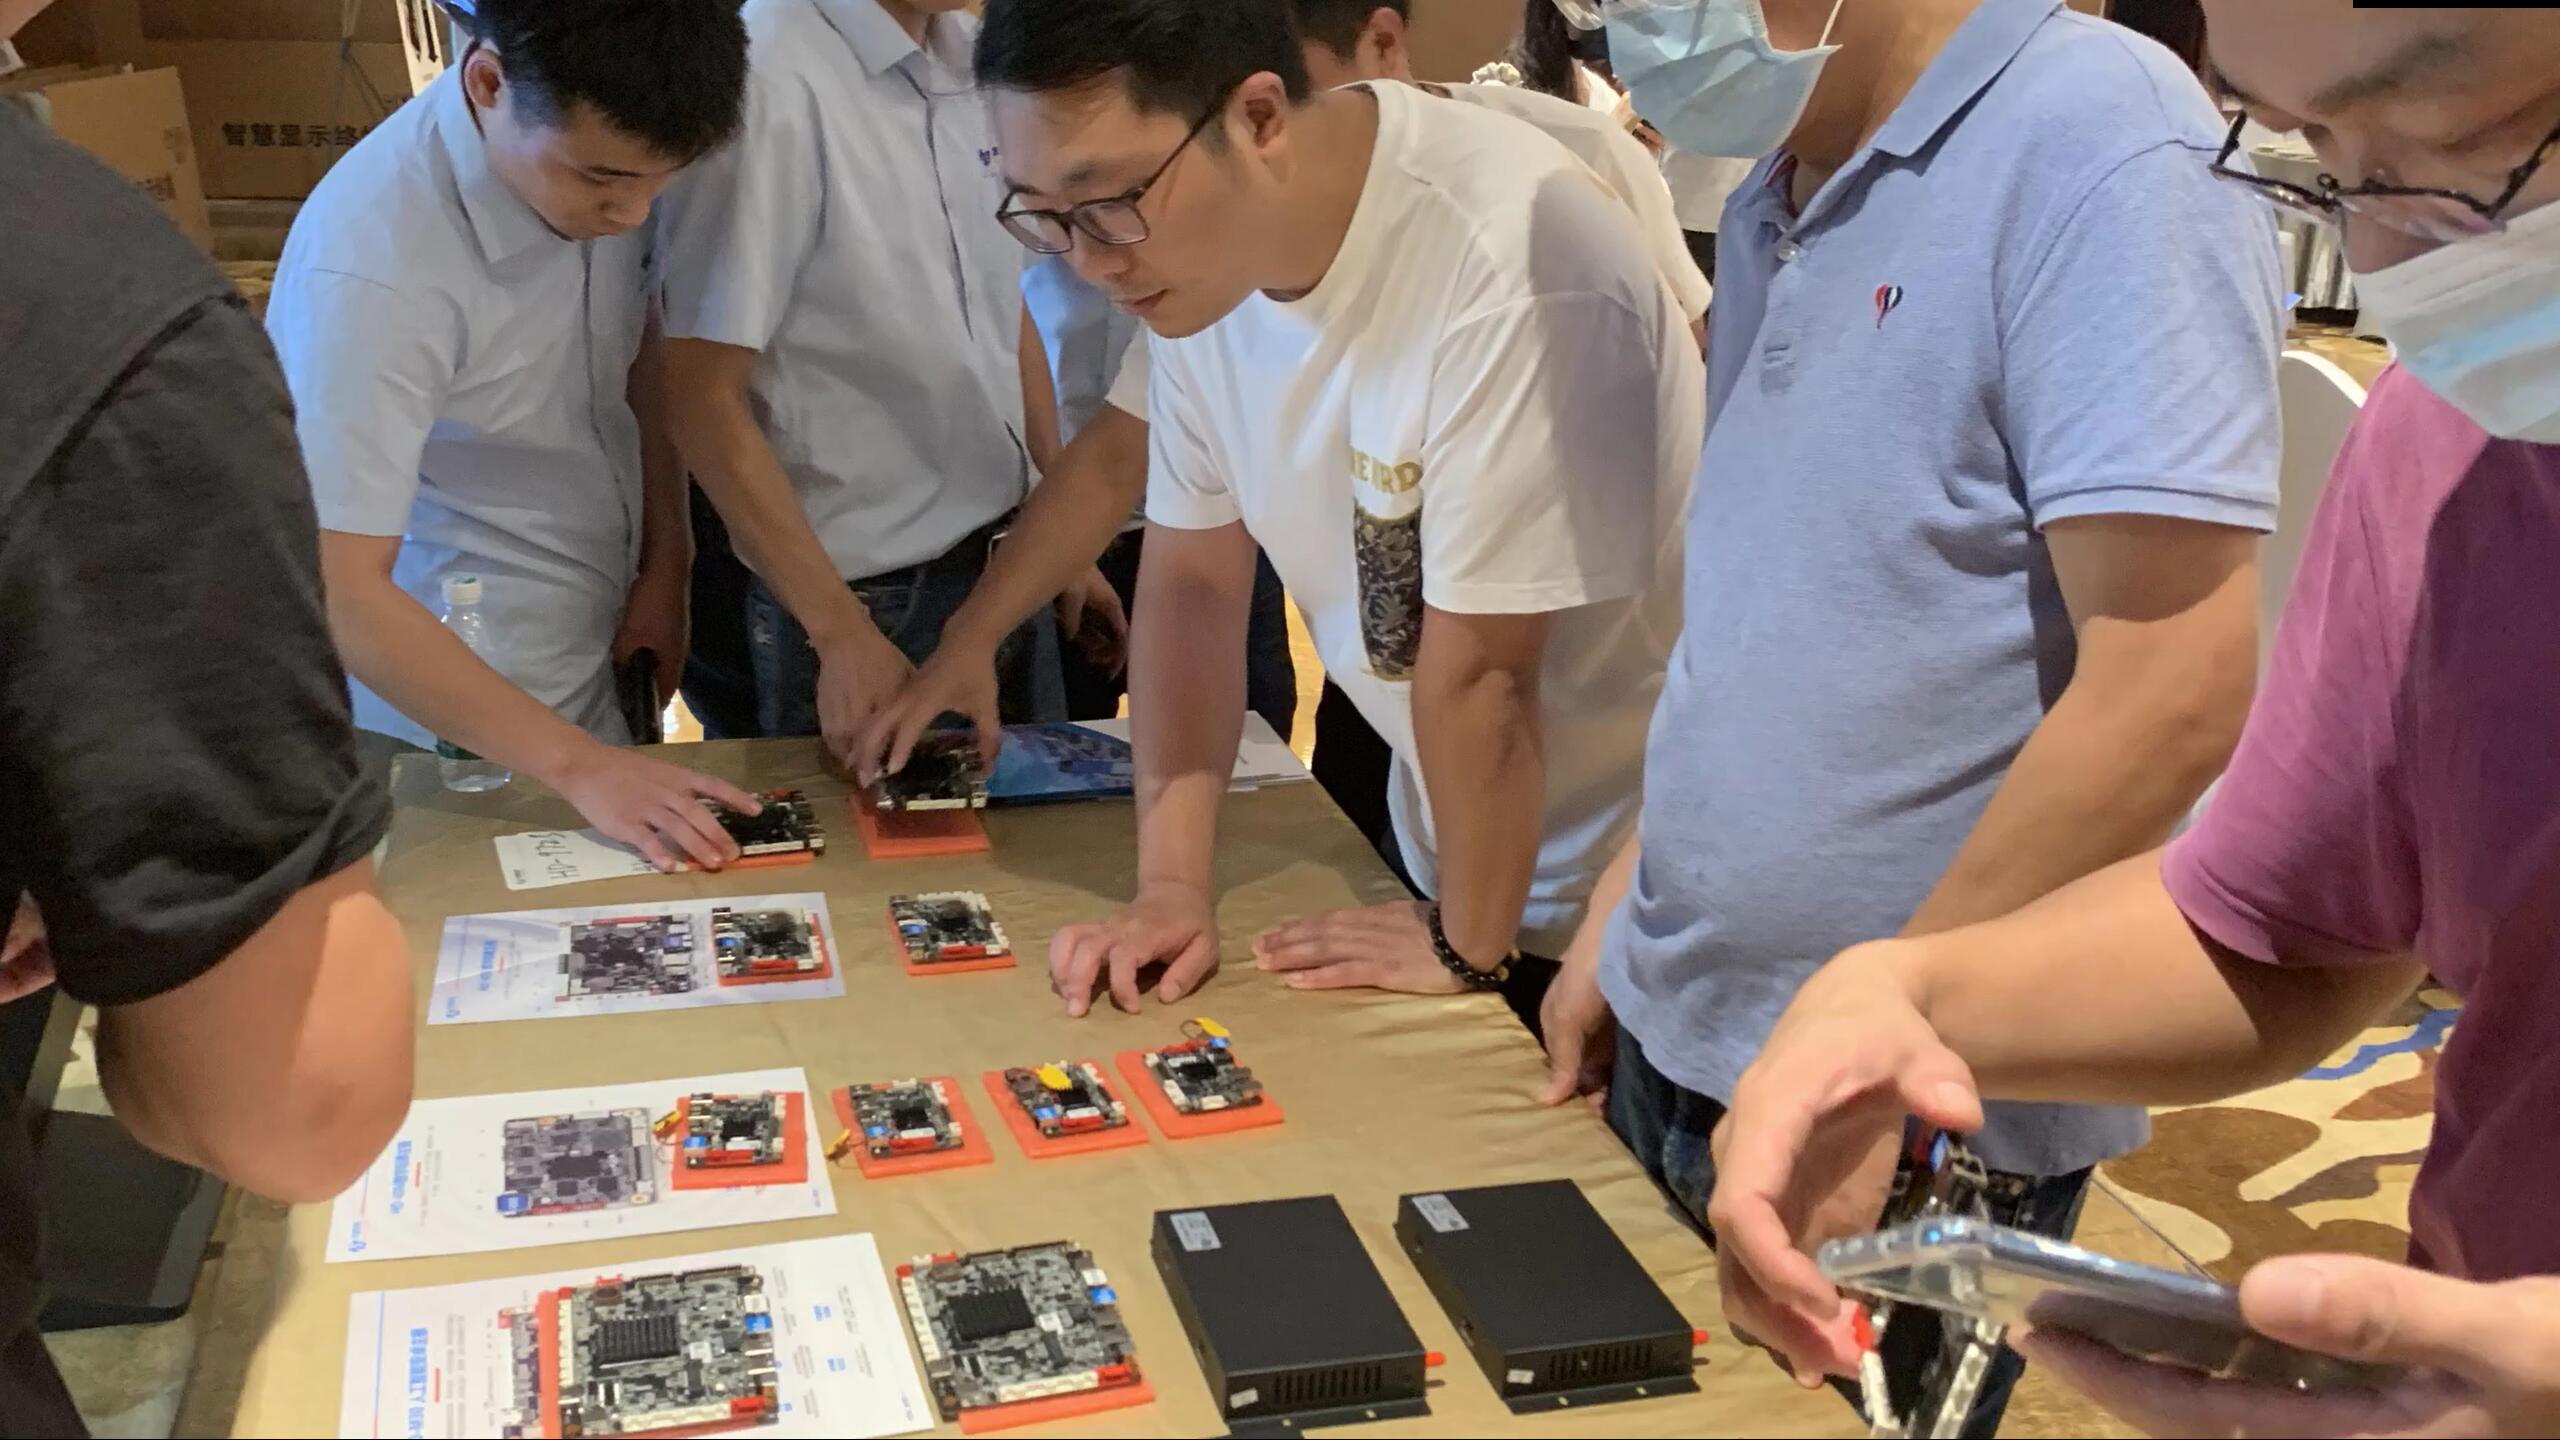 کنفرانس معرفی محصولات مادربرد LCD فناوری هویدو با موفقیت برگزار شد